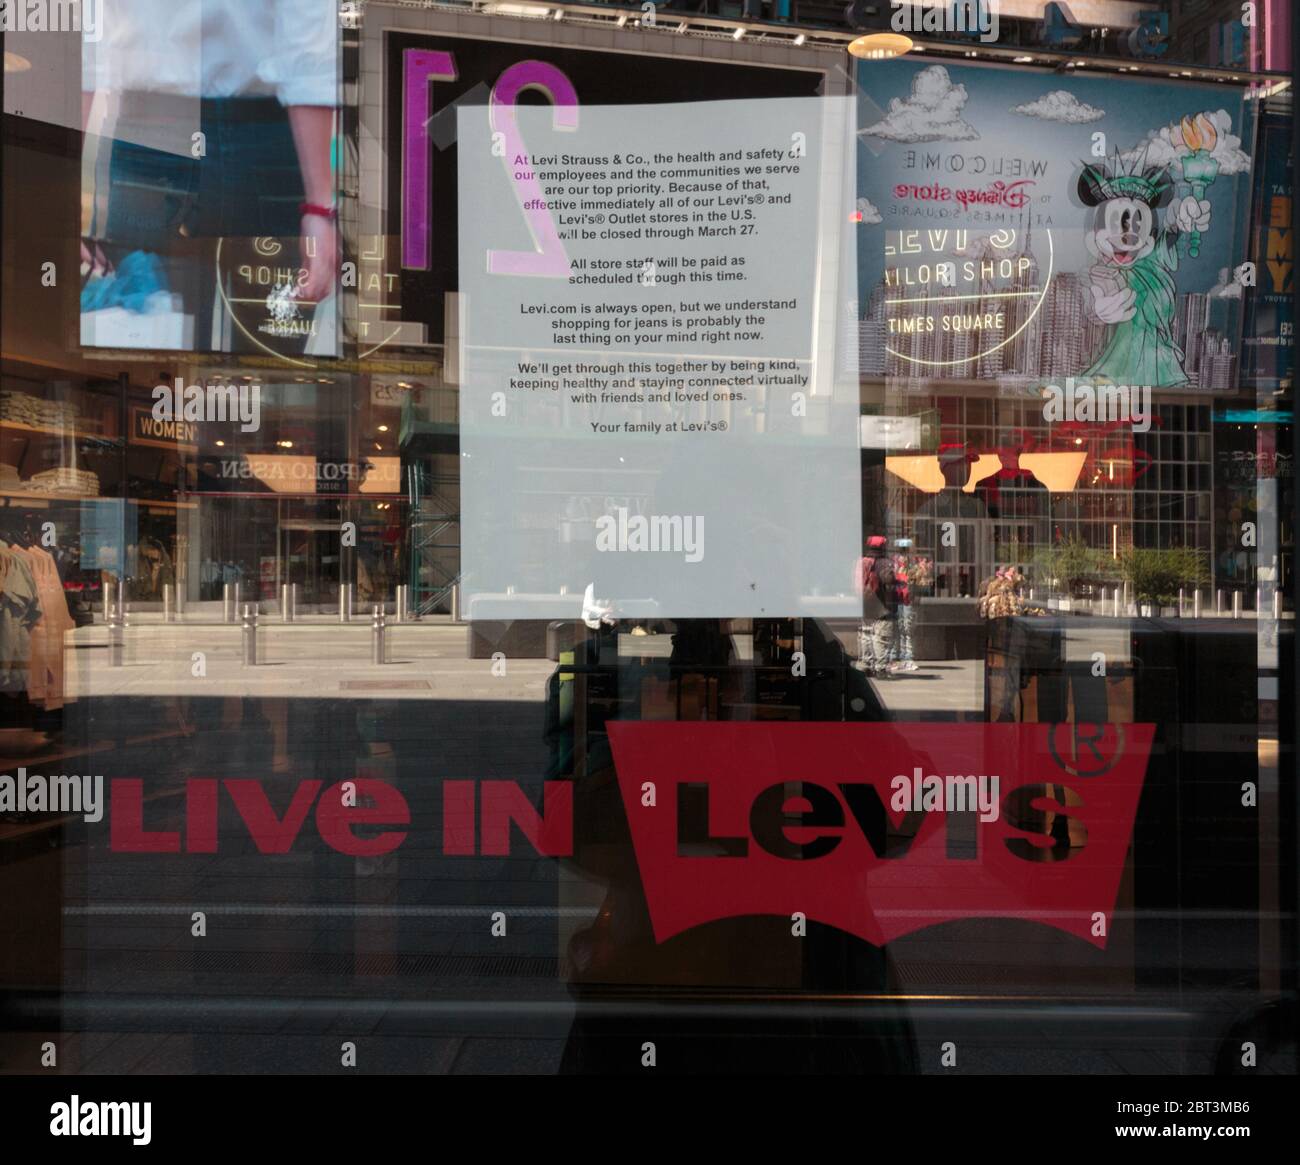 melden Sie sich in einem Levi's-Laden am Times Square an, der besagt, dass es wegen des Coronavirus oder der Covid-19-Pandemie geschlossen ist und sie zahlen ihre Mitarbeiter dafür Stockfoto